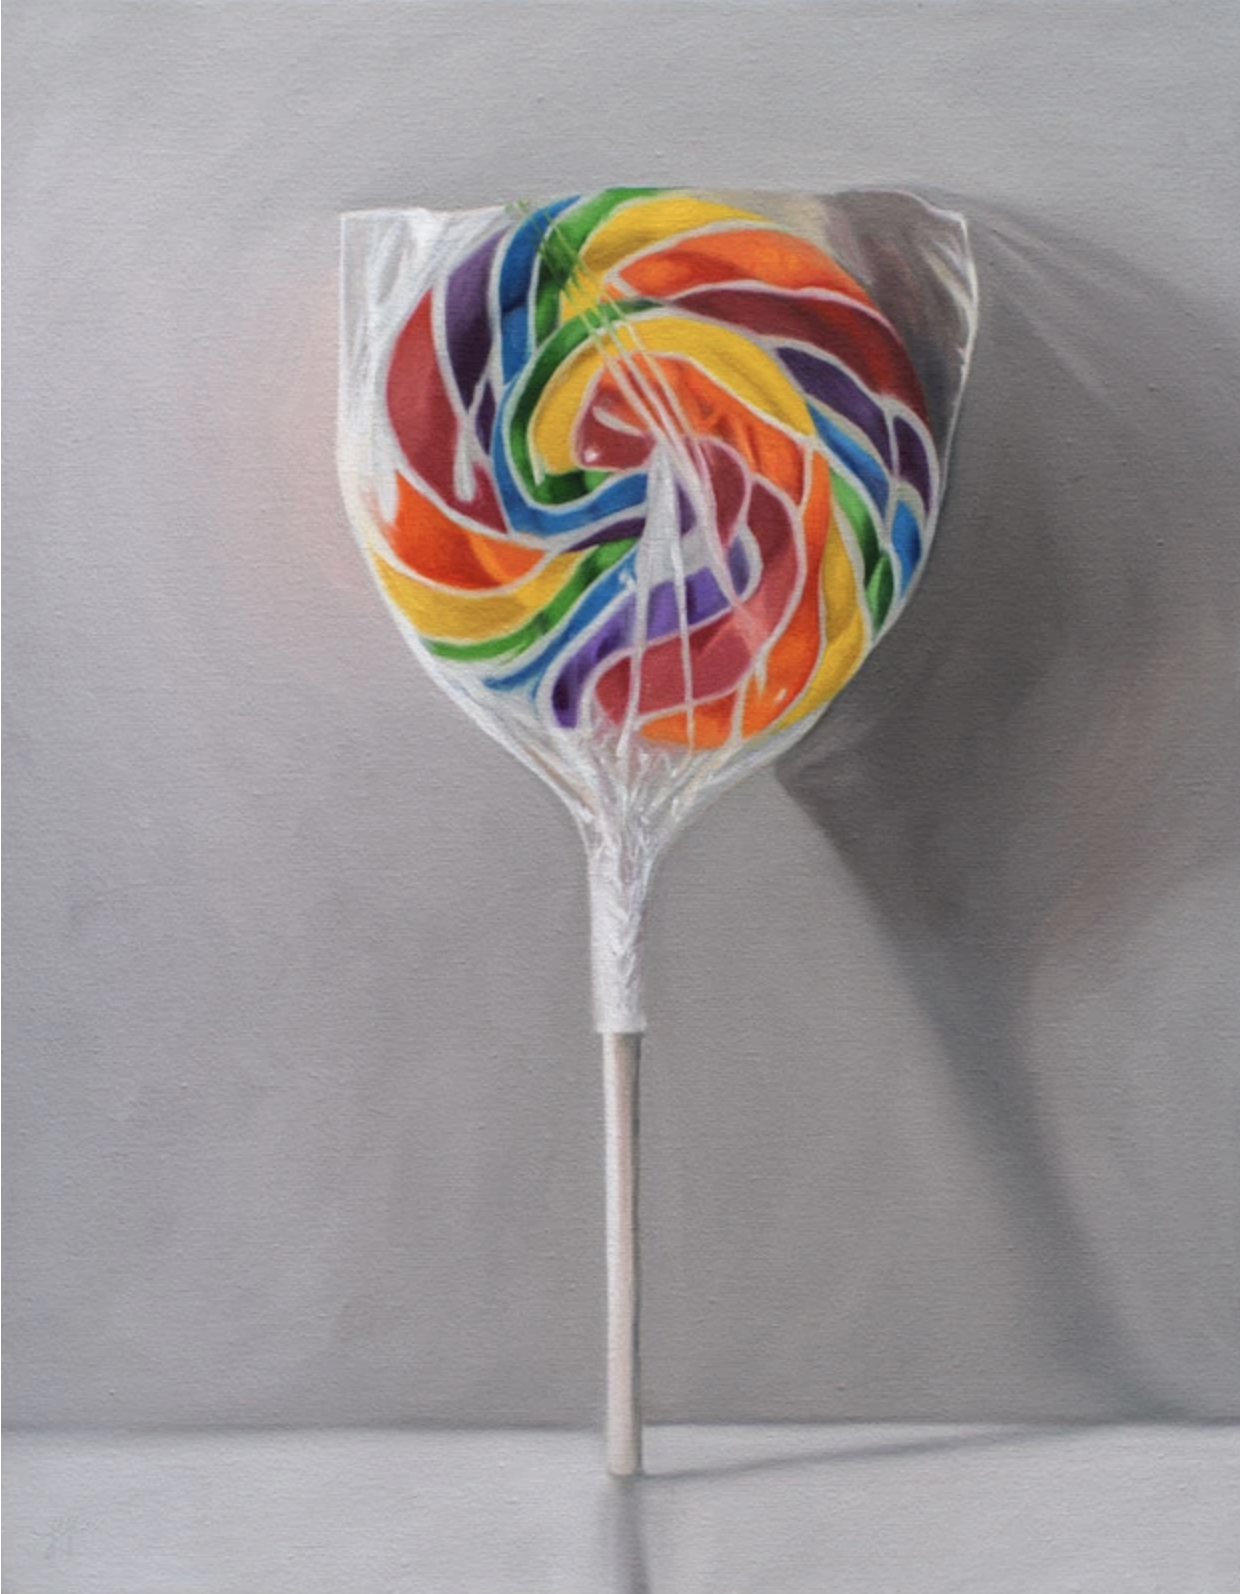 A single rainbow swirl lollipop rests agains a grey wall.